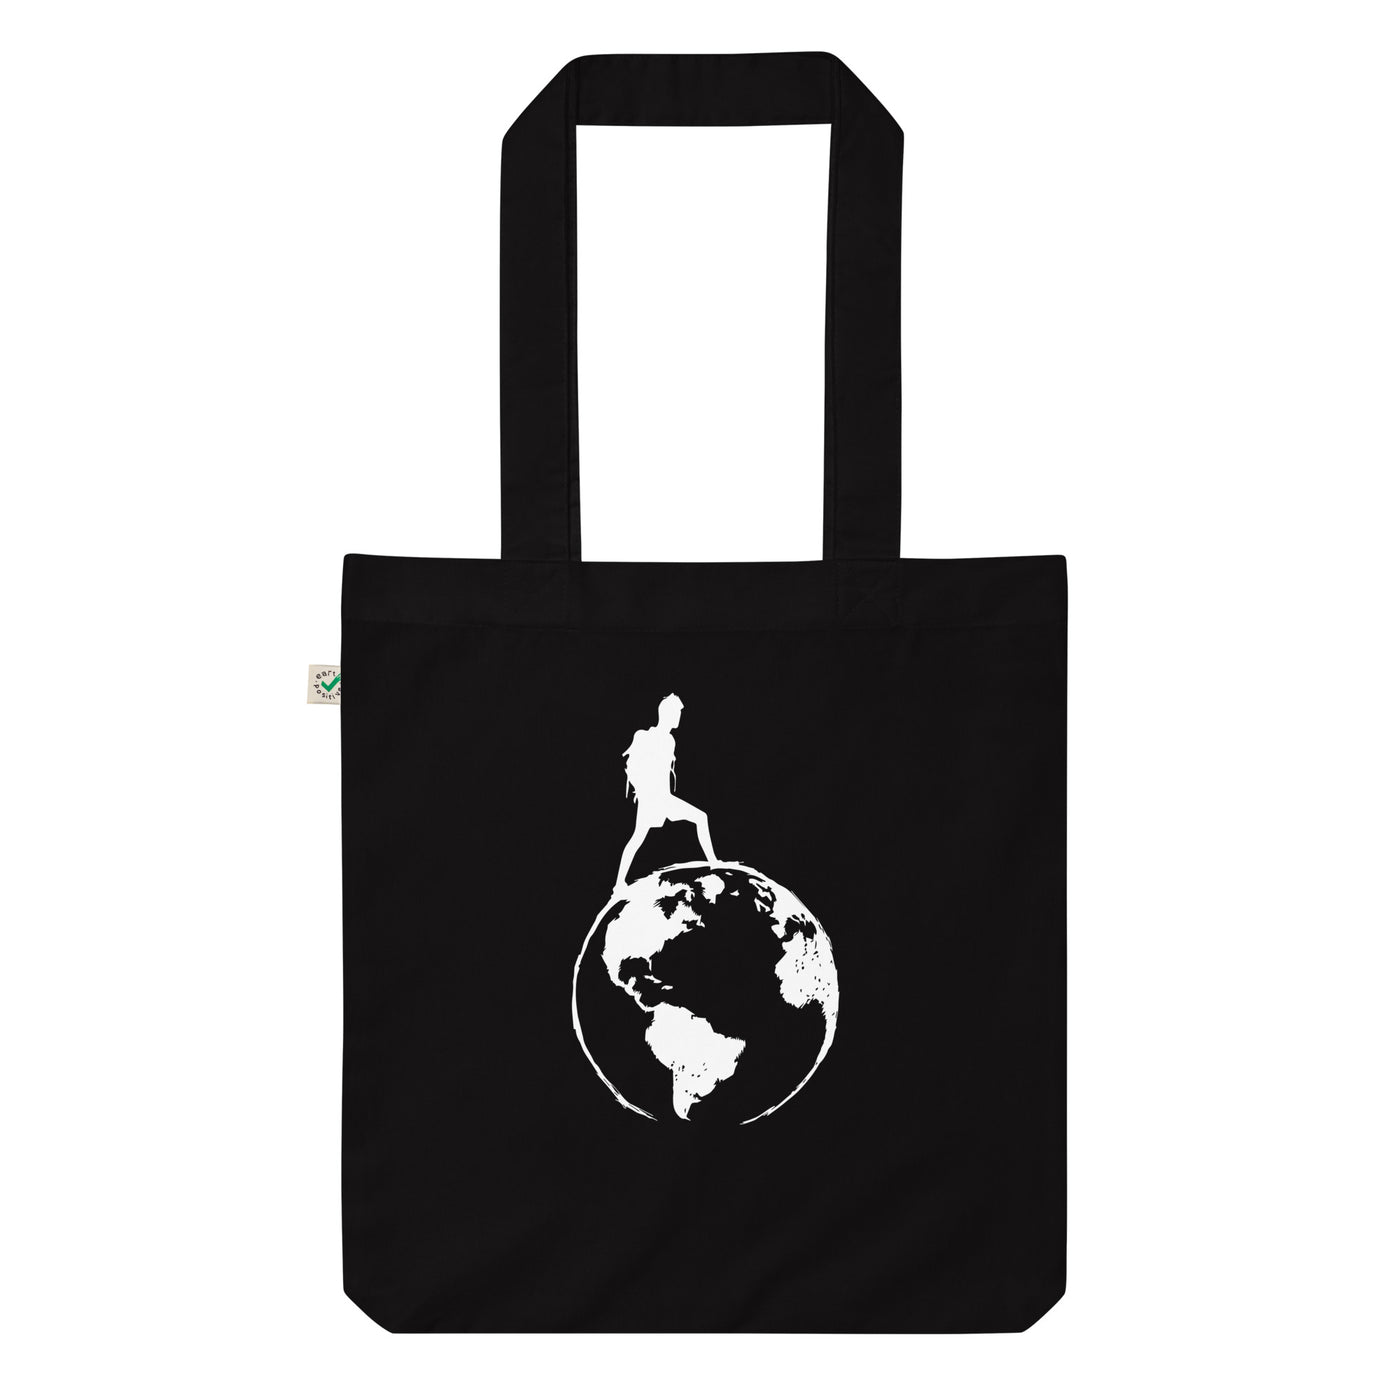 Globus - Wandern - Organic Einkaufstasche wandern Black